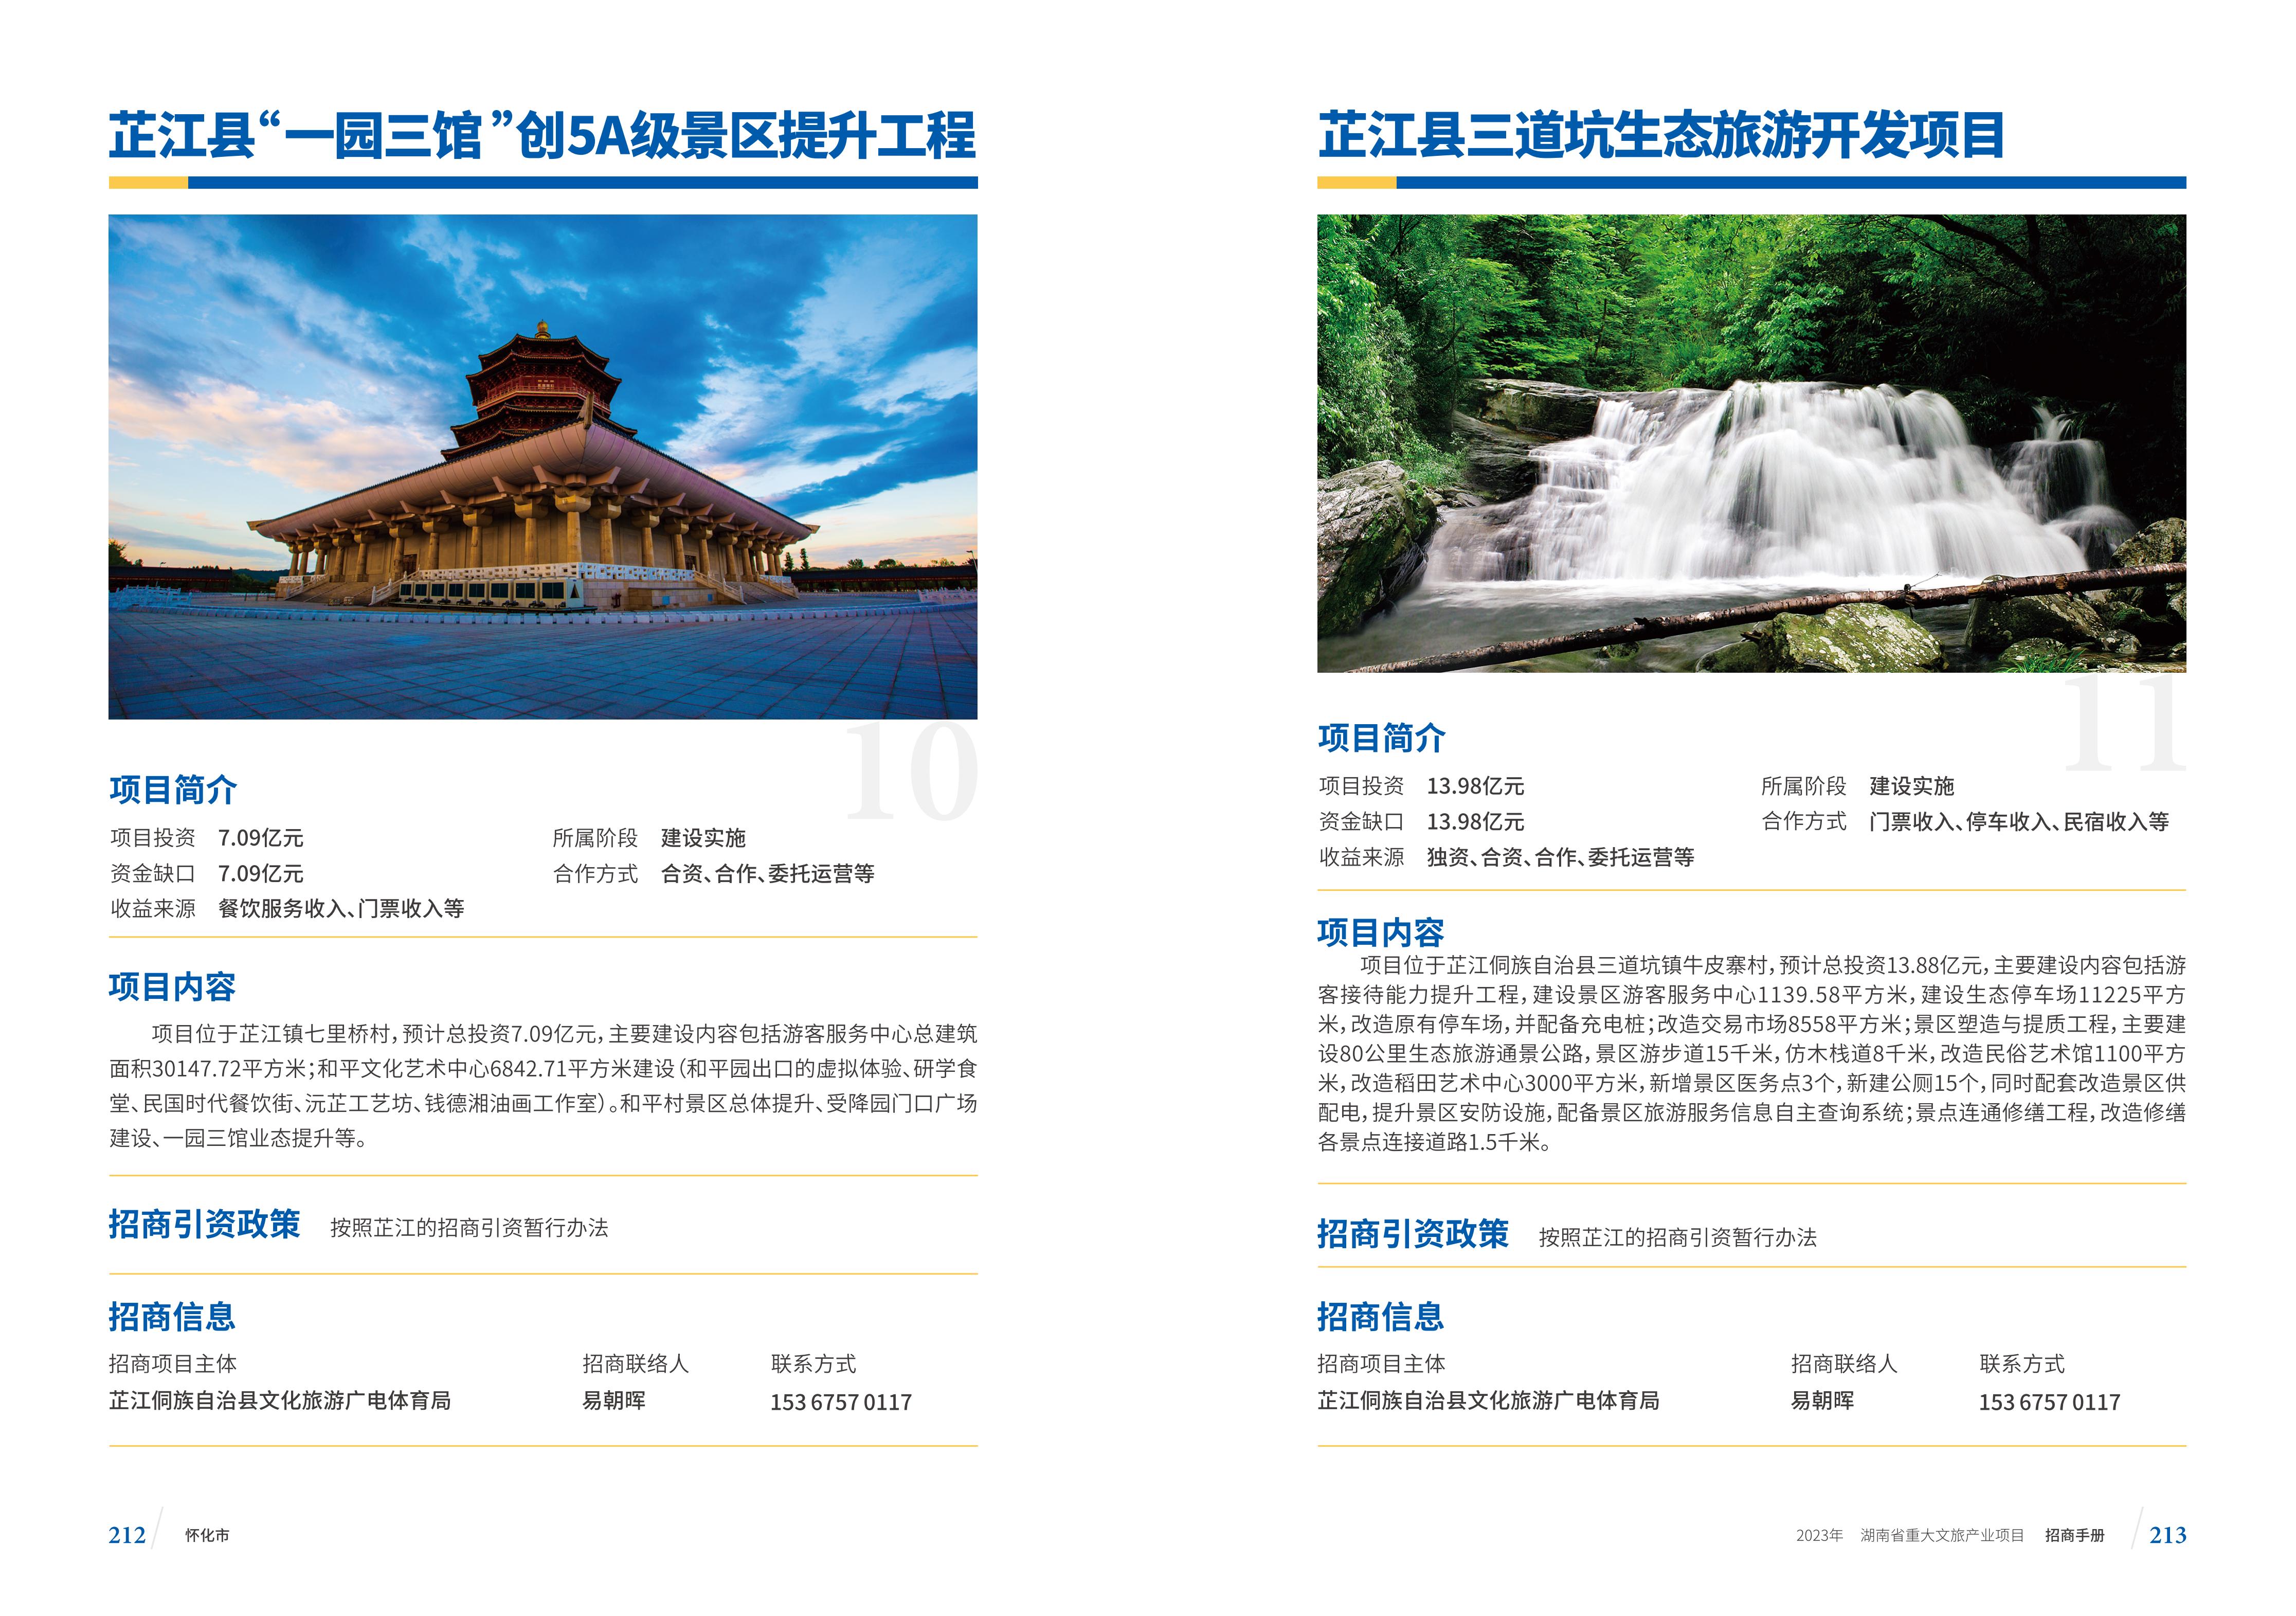 湖南省重大文旅产业项目招手册线上链接版_114.jpg